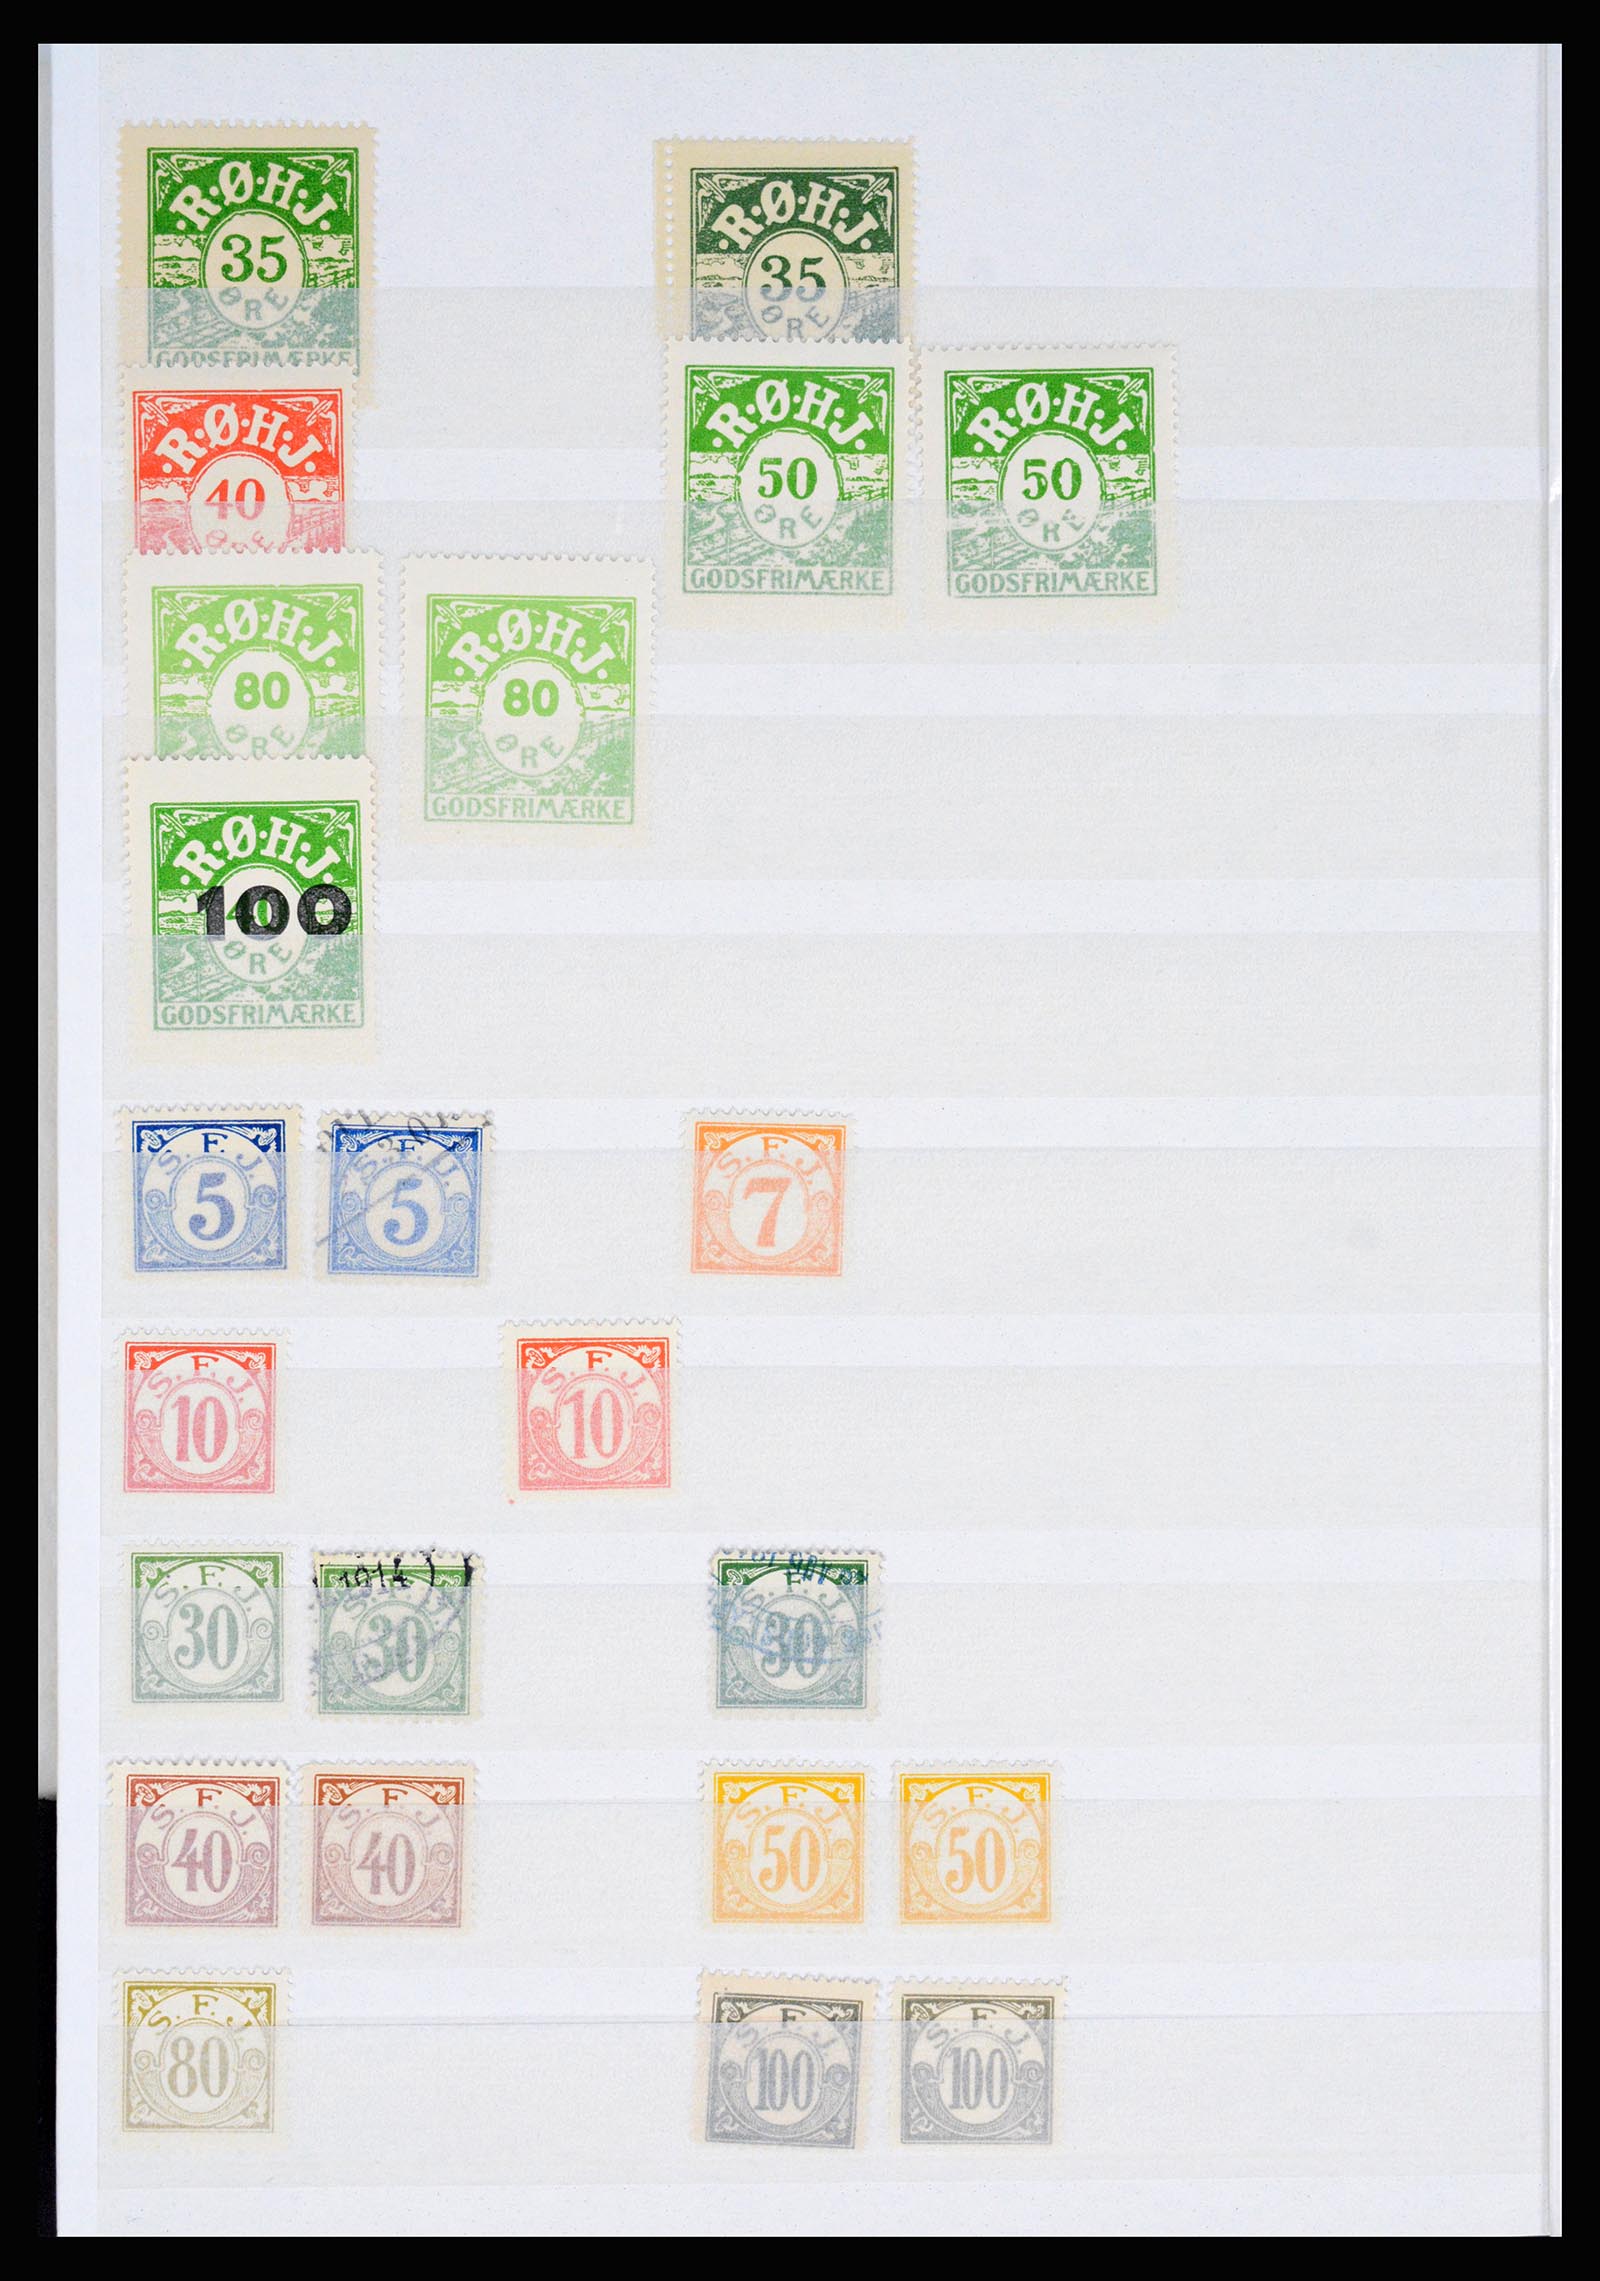 36982 125 - Postzegelverzameling 36982 Denemarken spoorwegzegels.